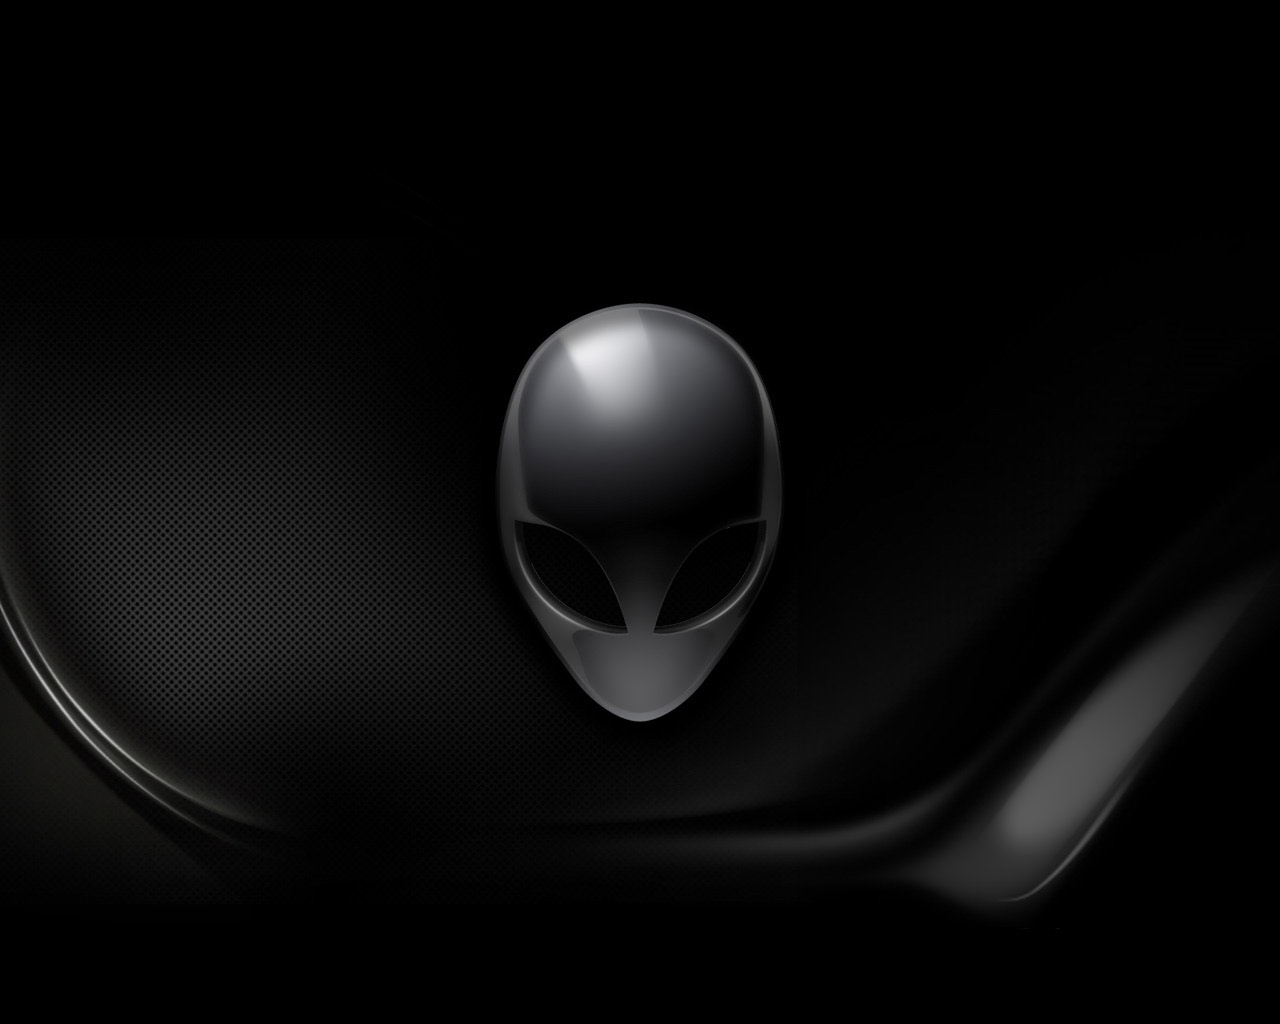 alien black wallpaper, download wallpapers for desktop